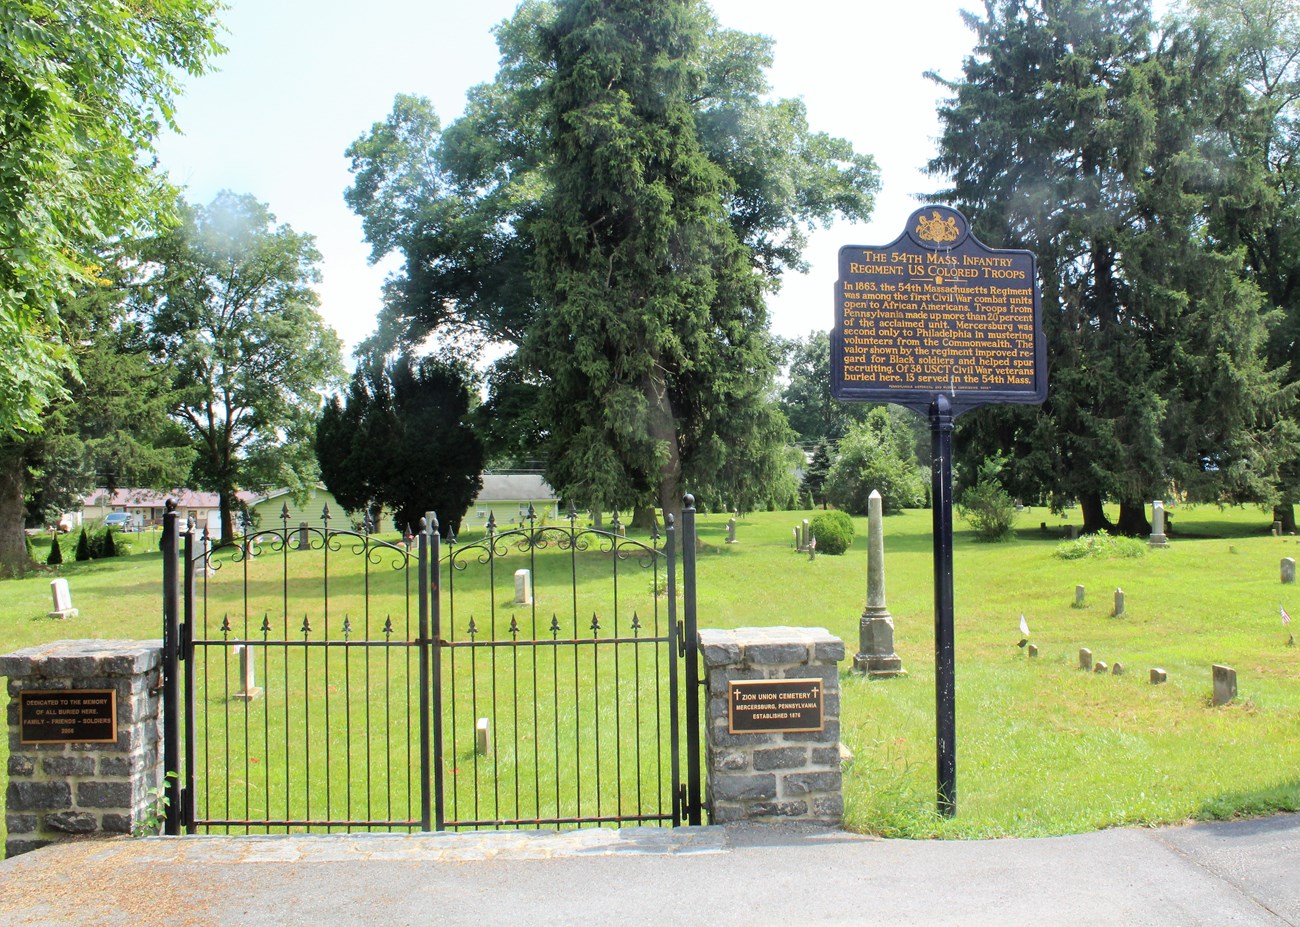 Pennsylvania Historical Marker for the 54th Massachusetts